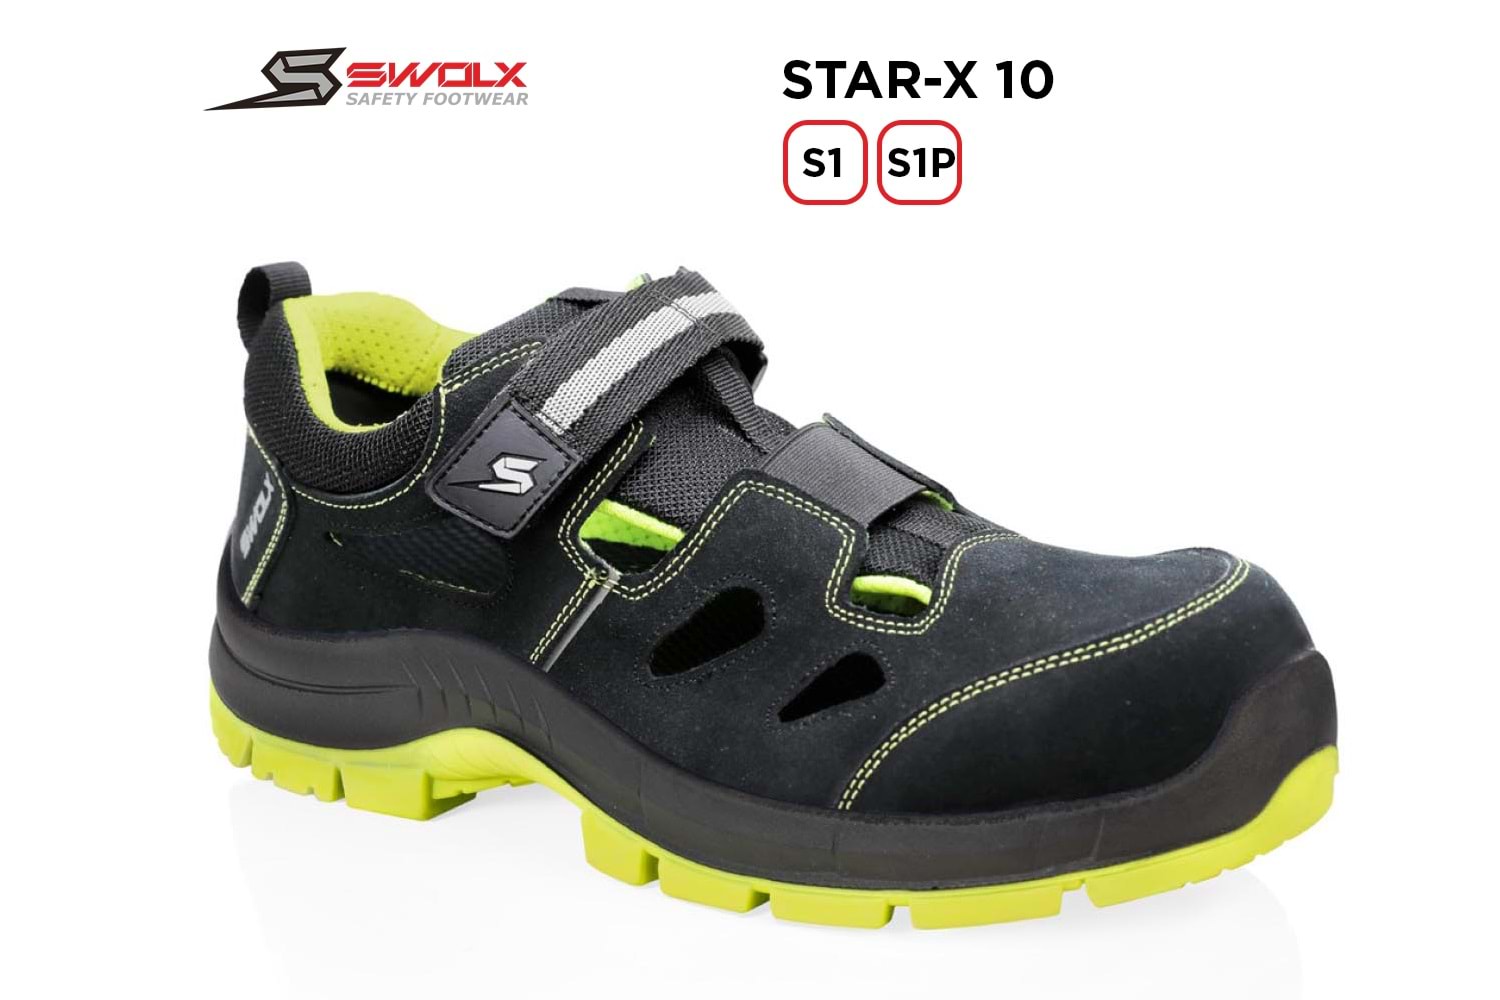 Swolx İş Ayakkabısı - Star-X 10 S1P